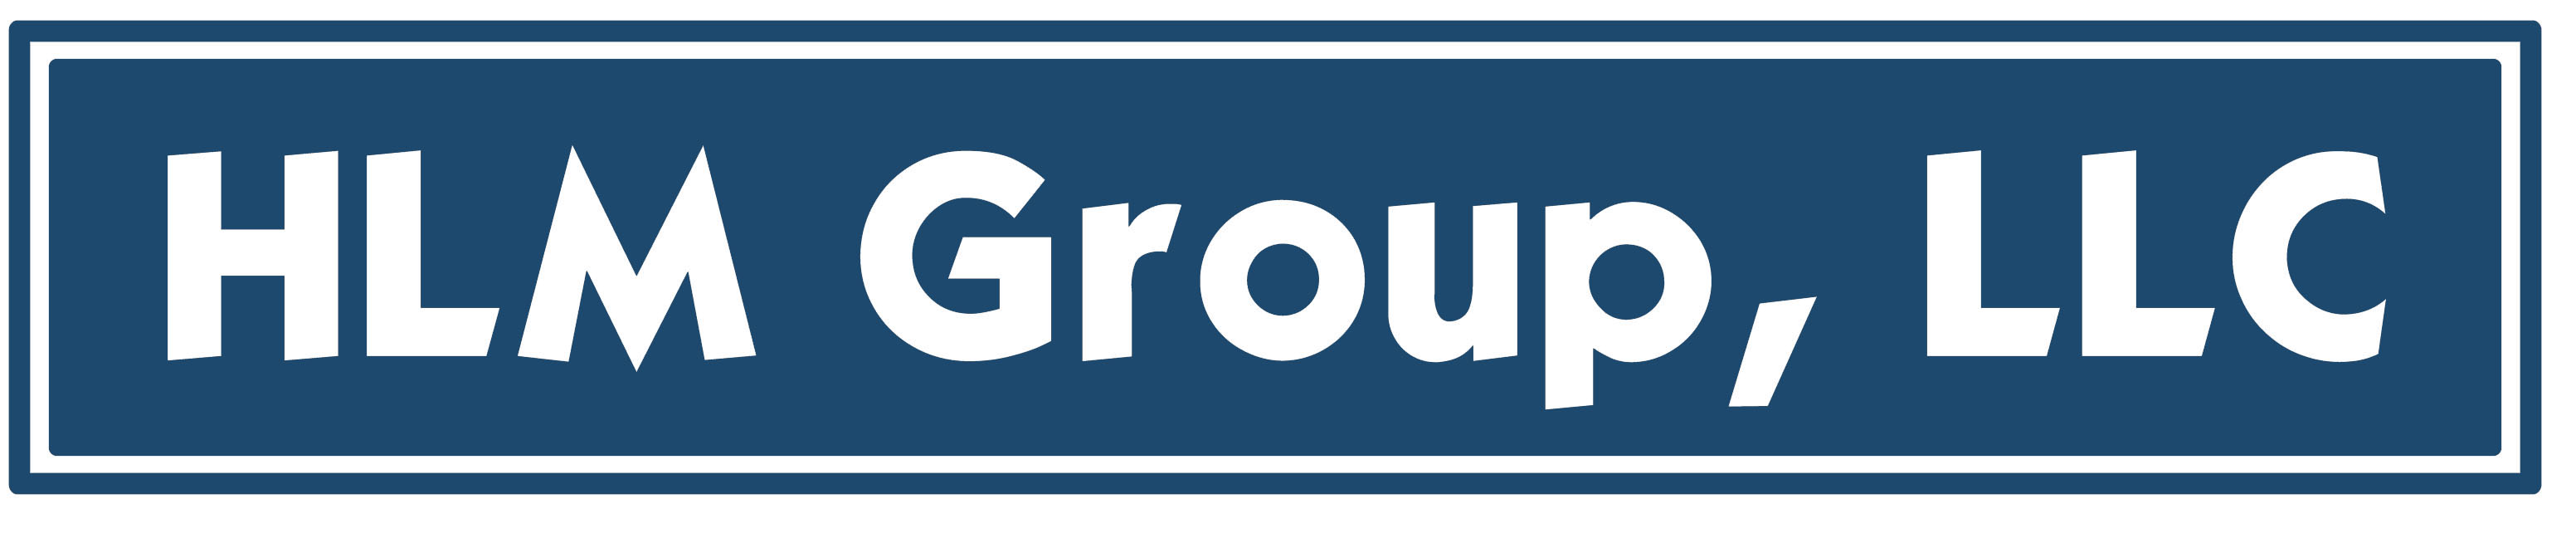 HLM Group, LLC